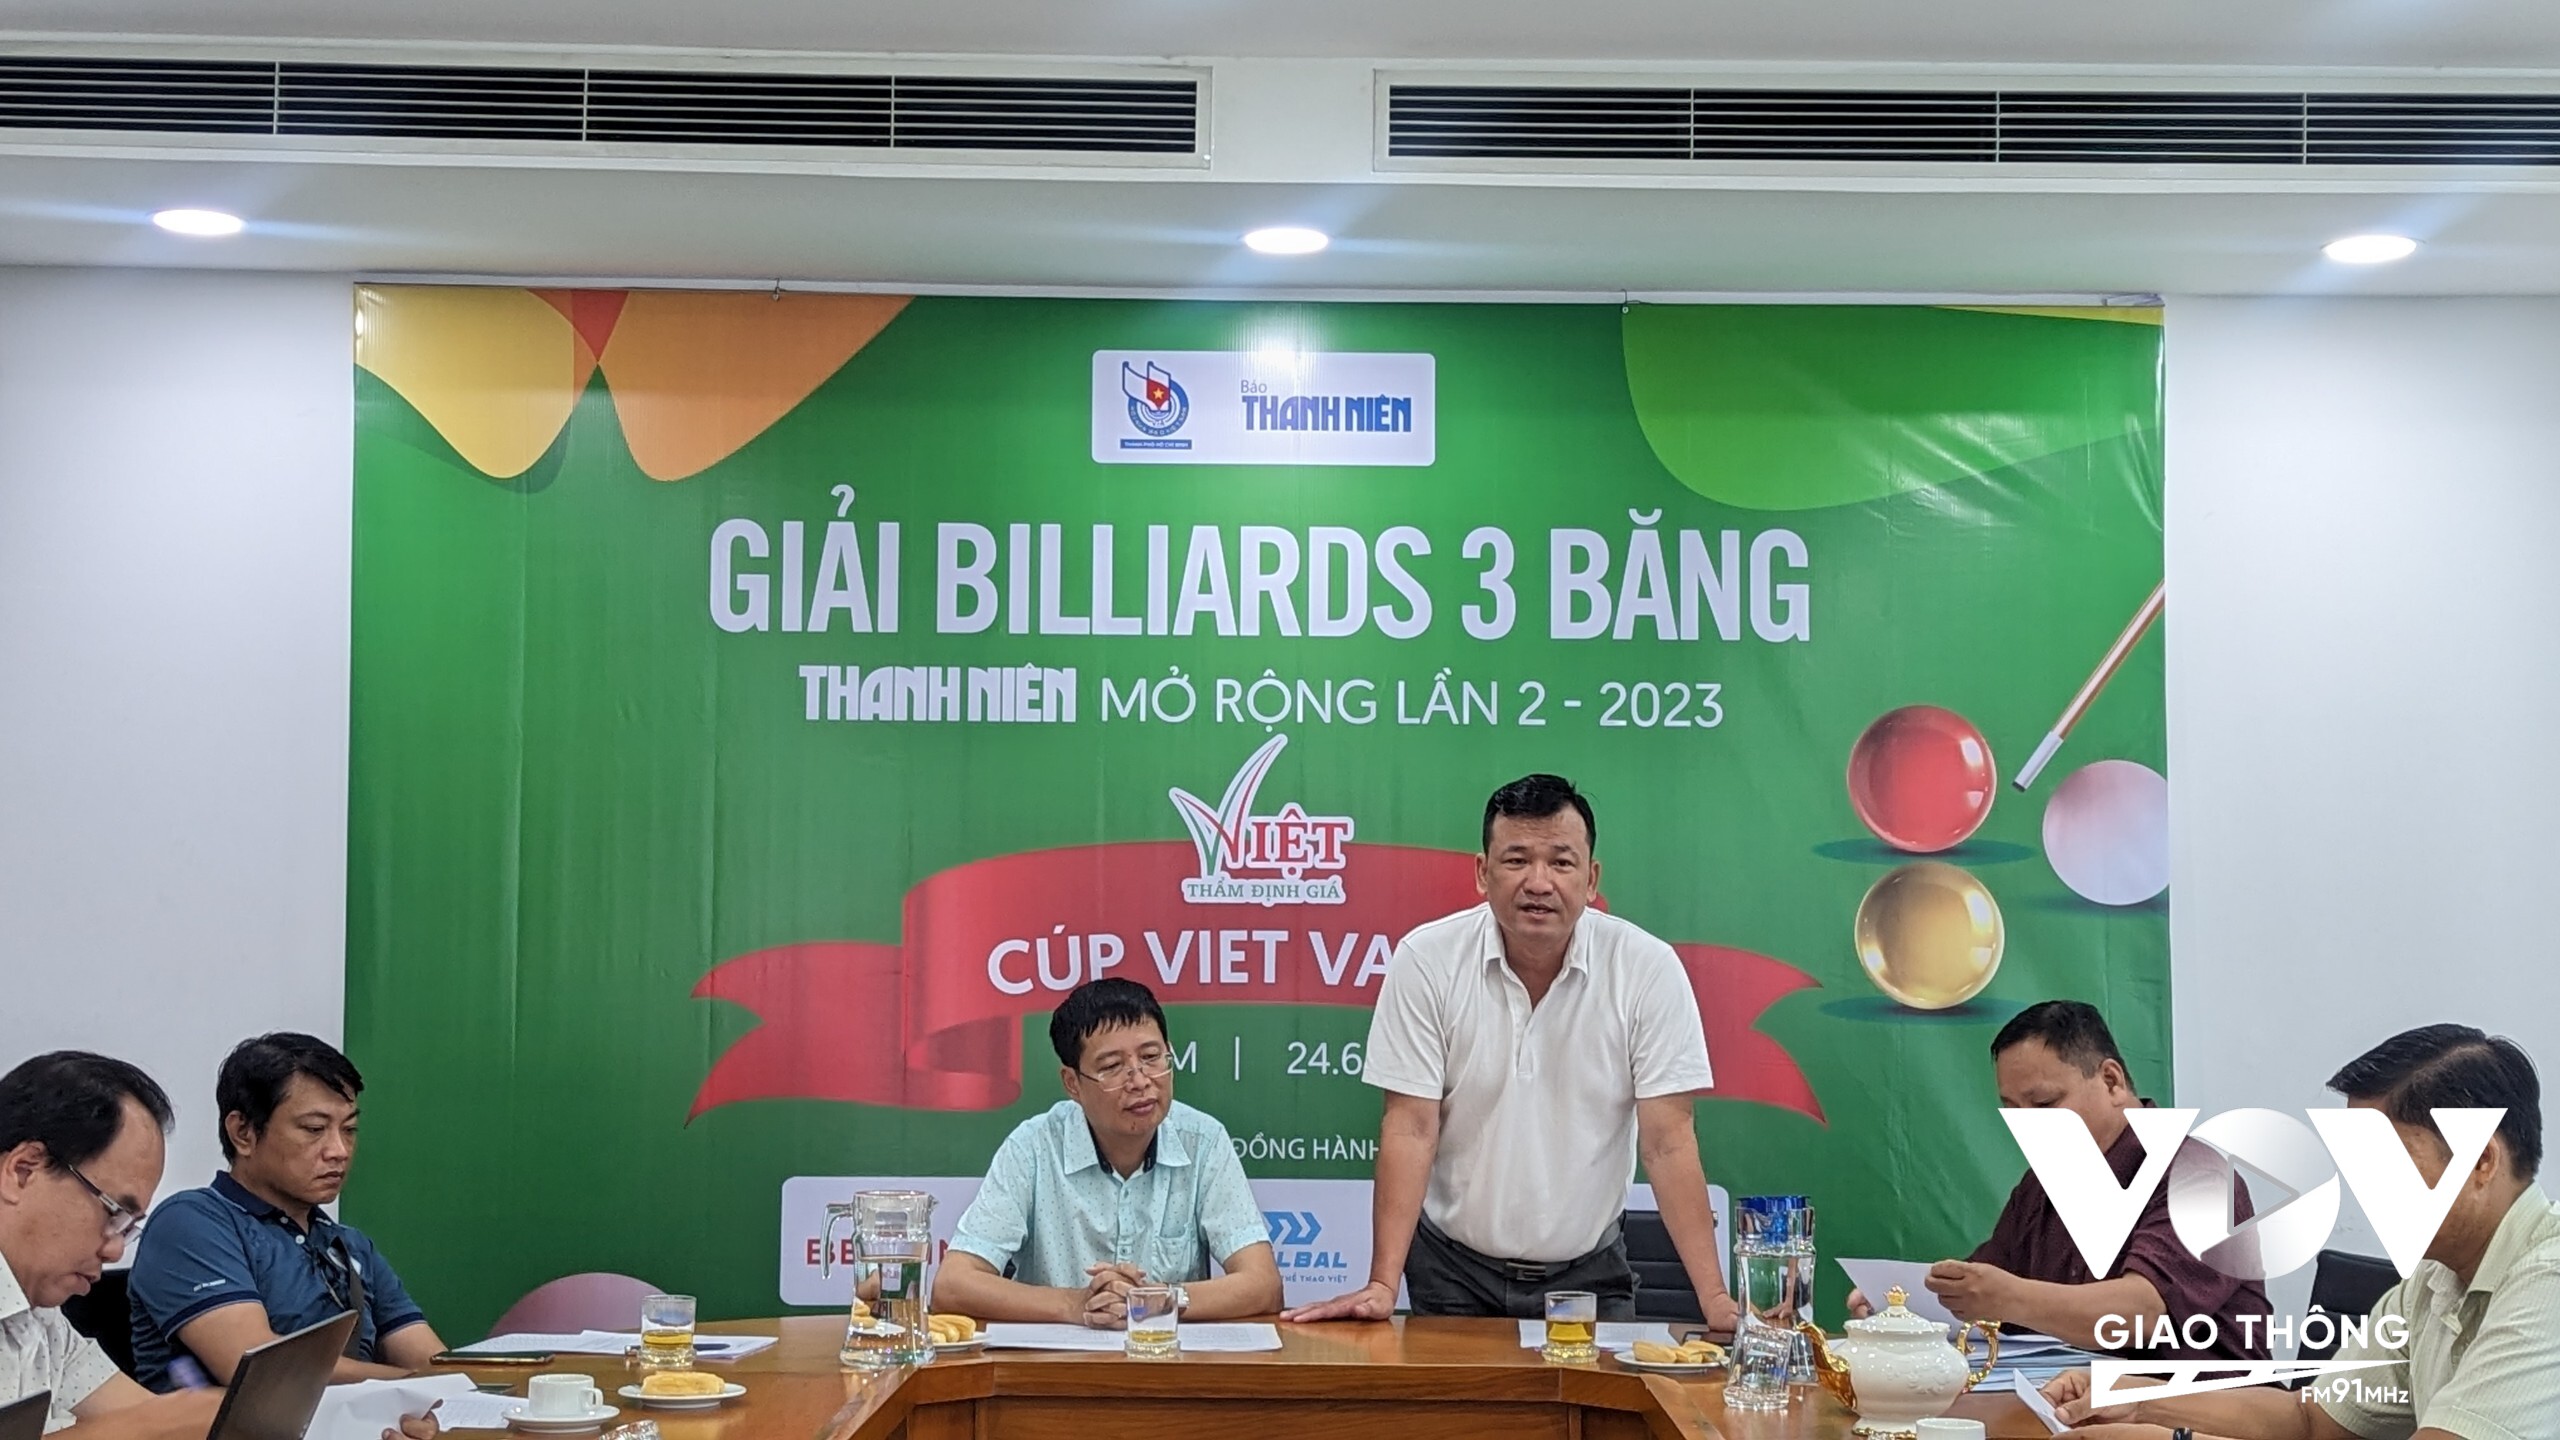 Đại diện BTC Giải billiards 3 băng Báo Thanh Niên mở rộng lần 2 cúp Viet Value 2023 tại buổi họp kỹ thuật, bốc thăm sáng nay.